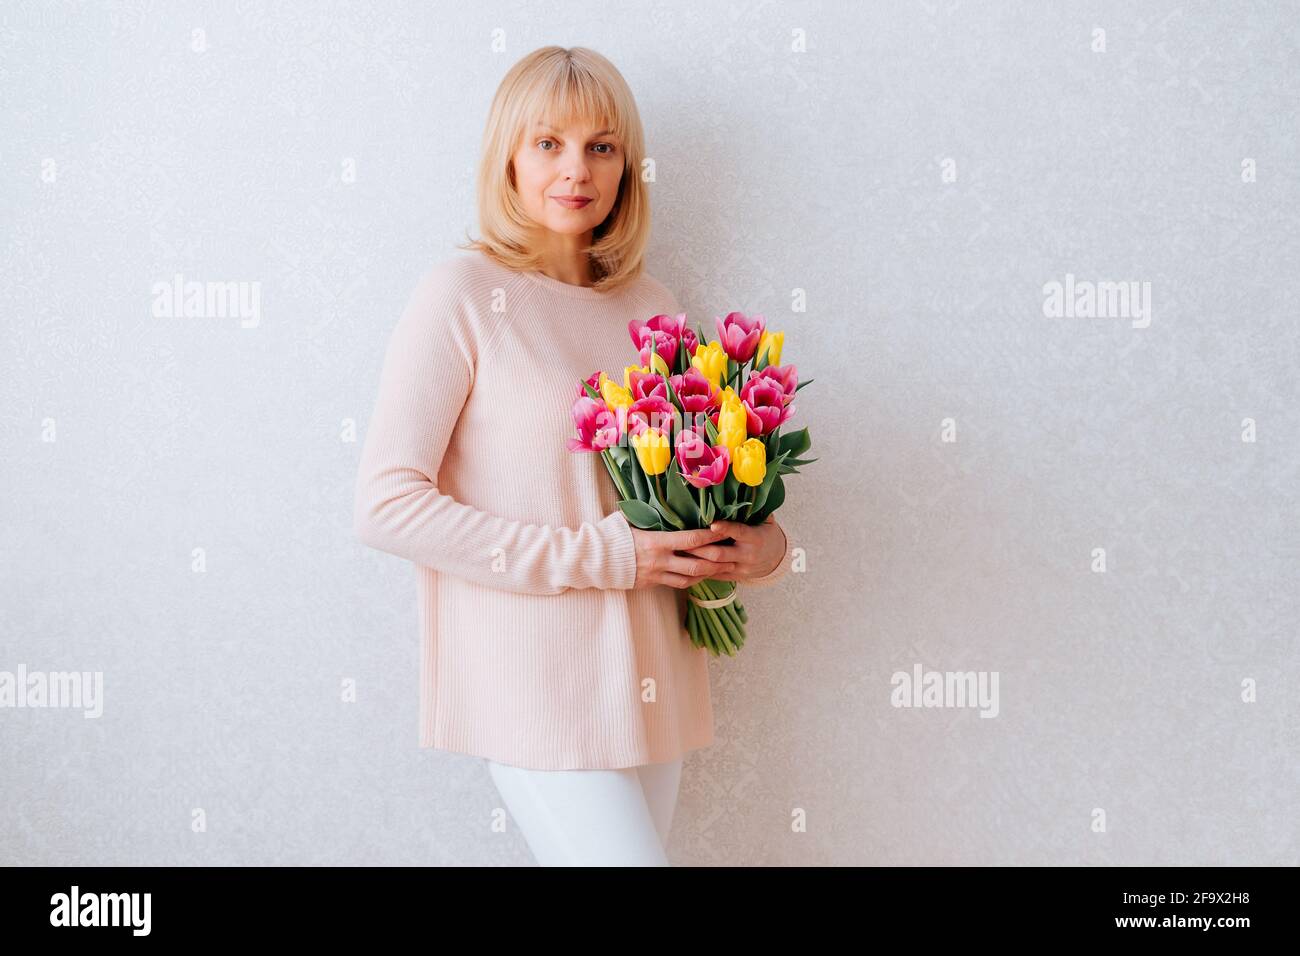 Beautiful mature woman holding tulips. Stock Photo